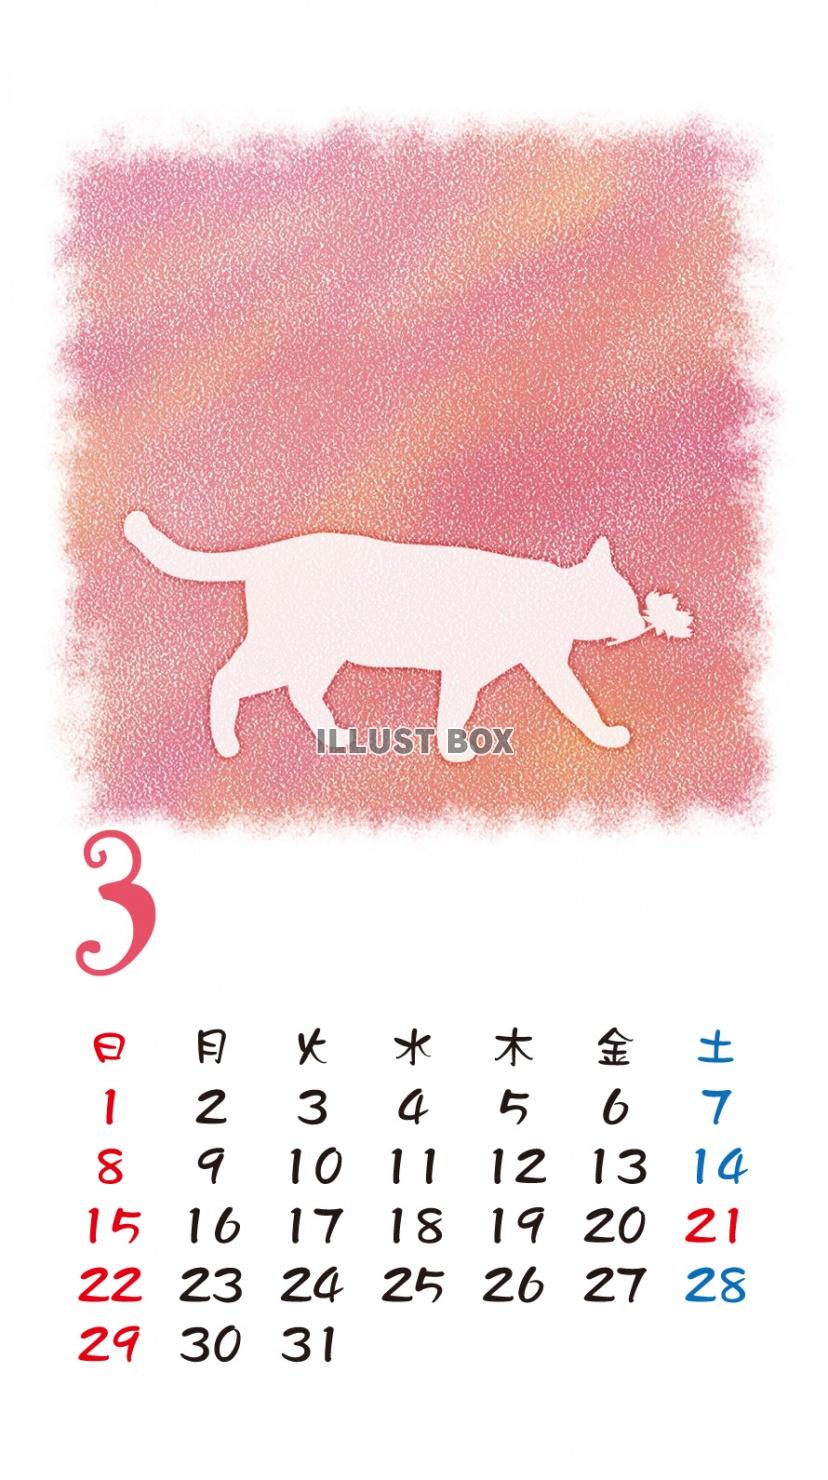 無料イラスト Iphone6用 カレンダー 猫シルエットパステル調 3月